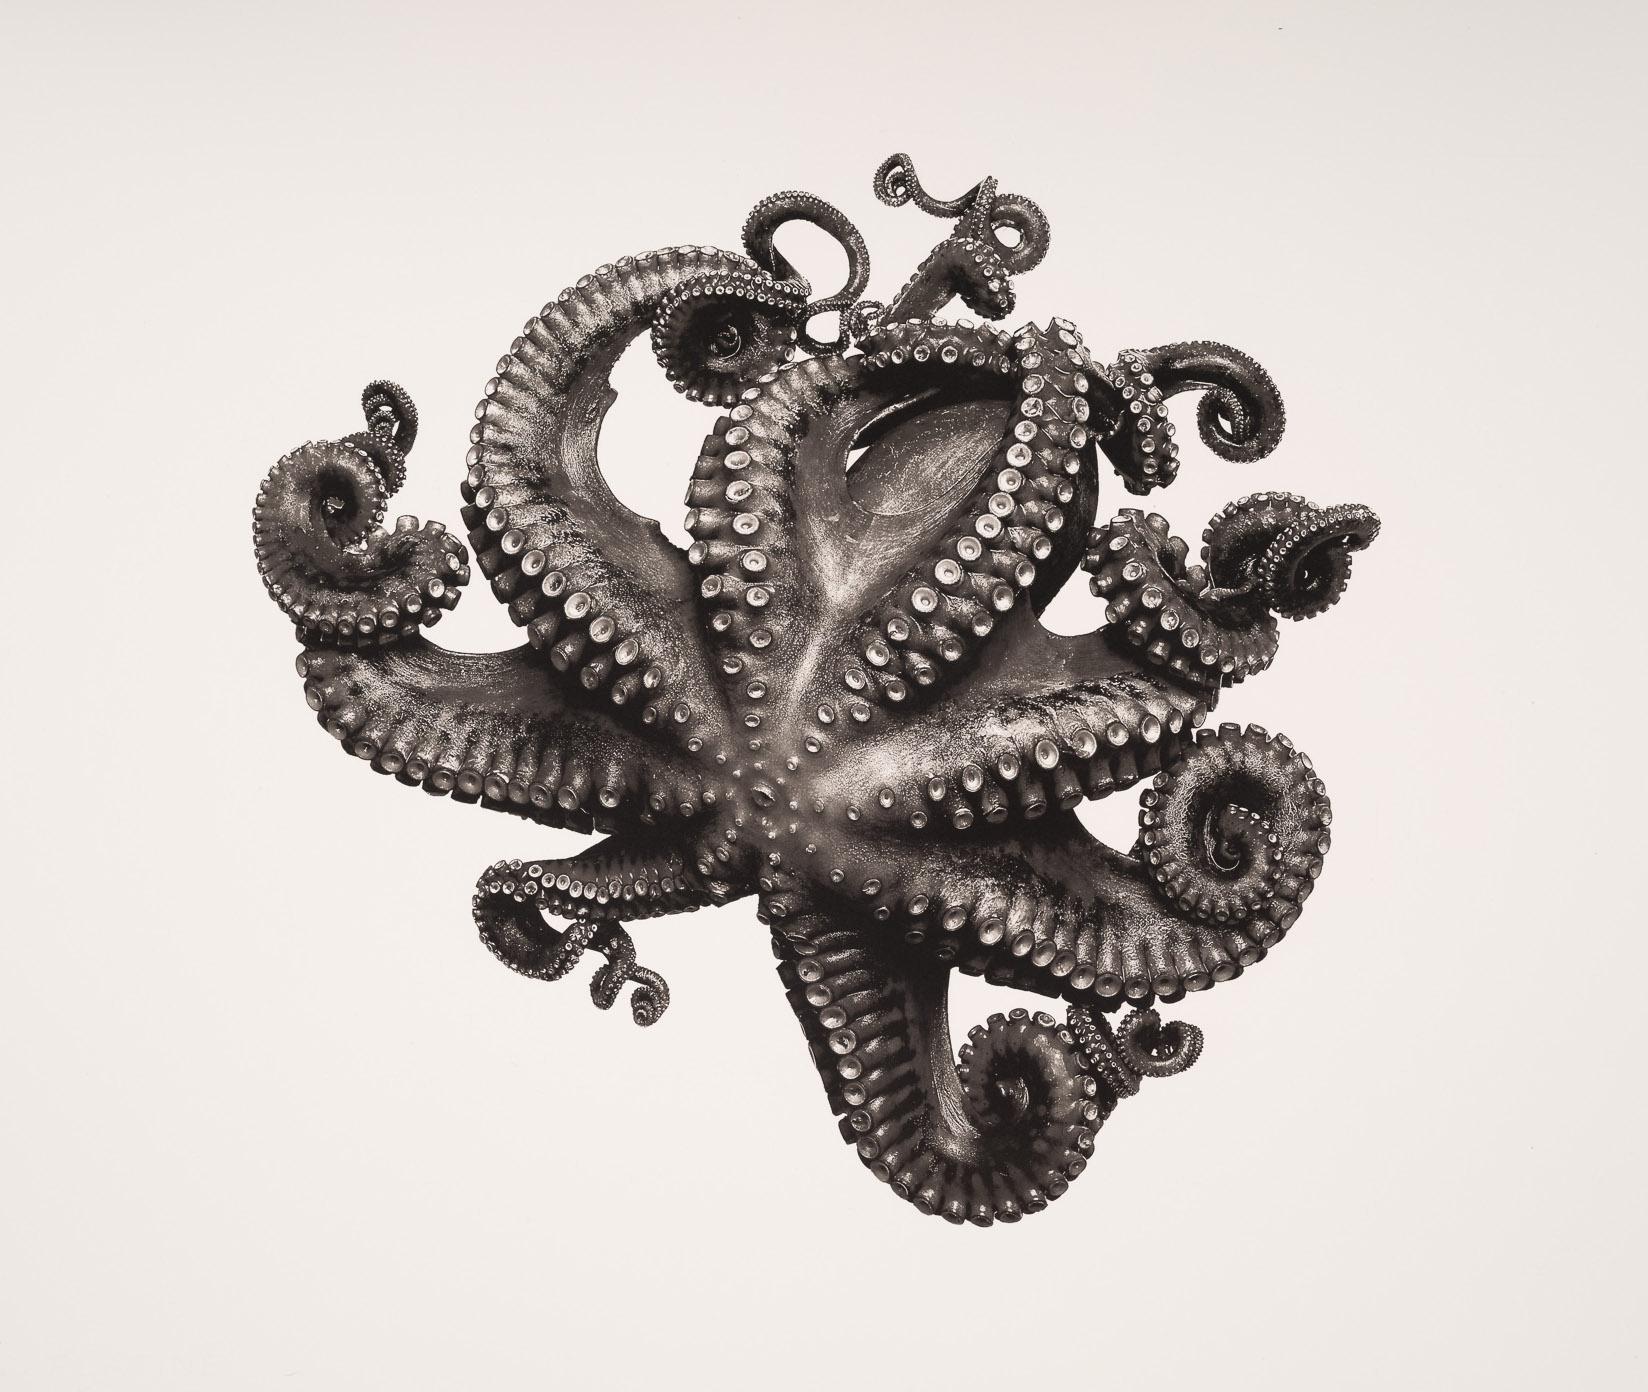 Octopus Vulgaris (édition spéciale)